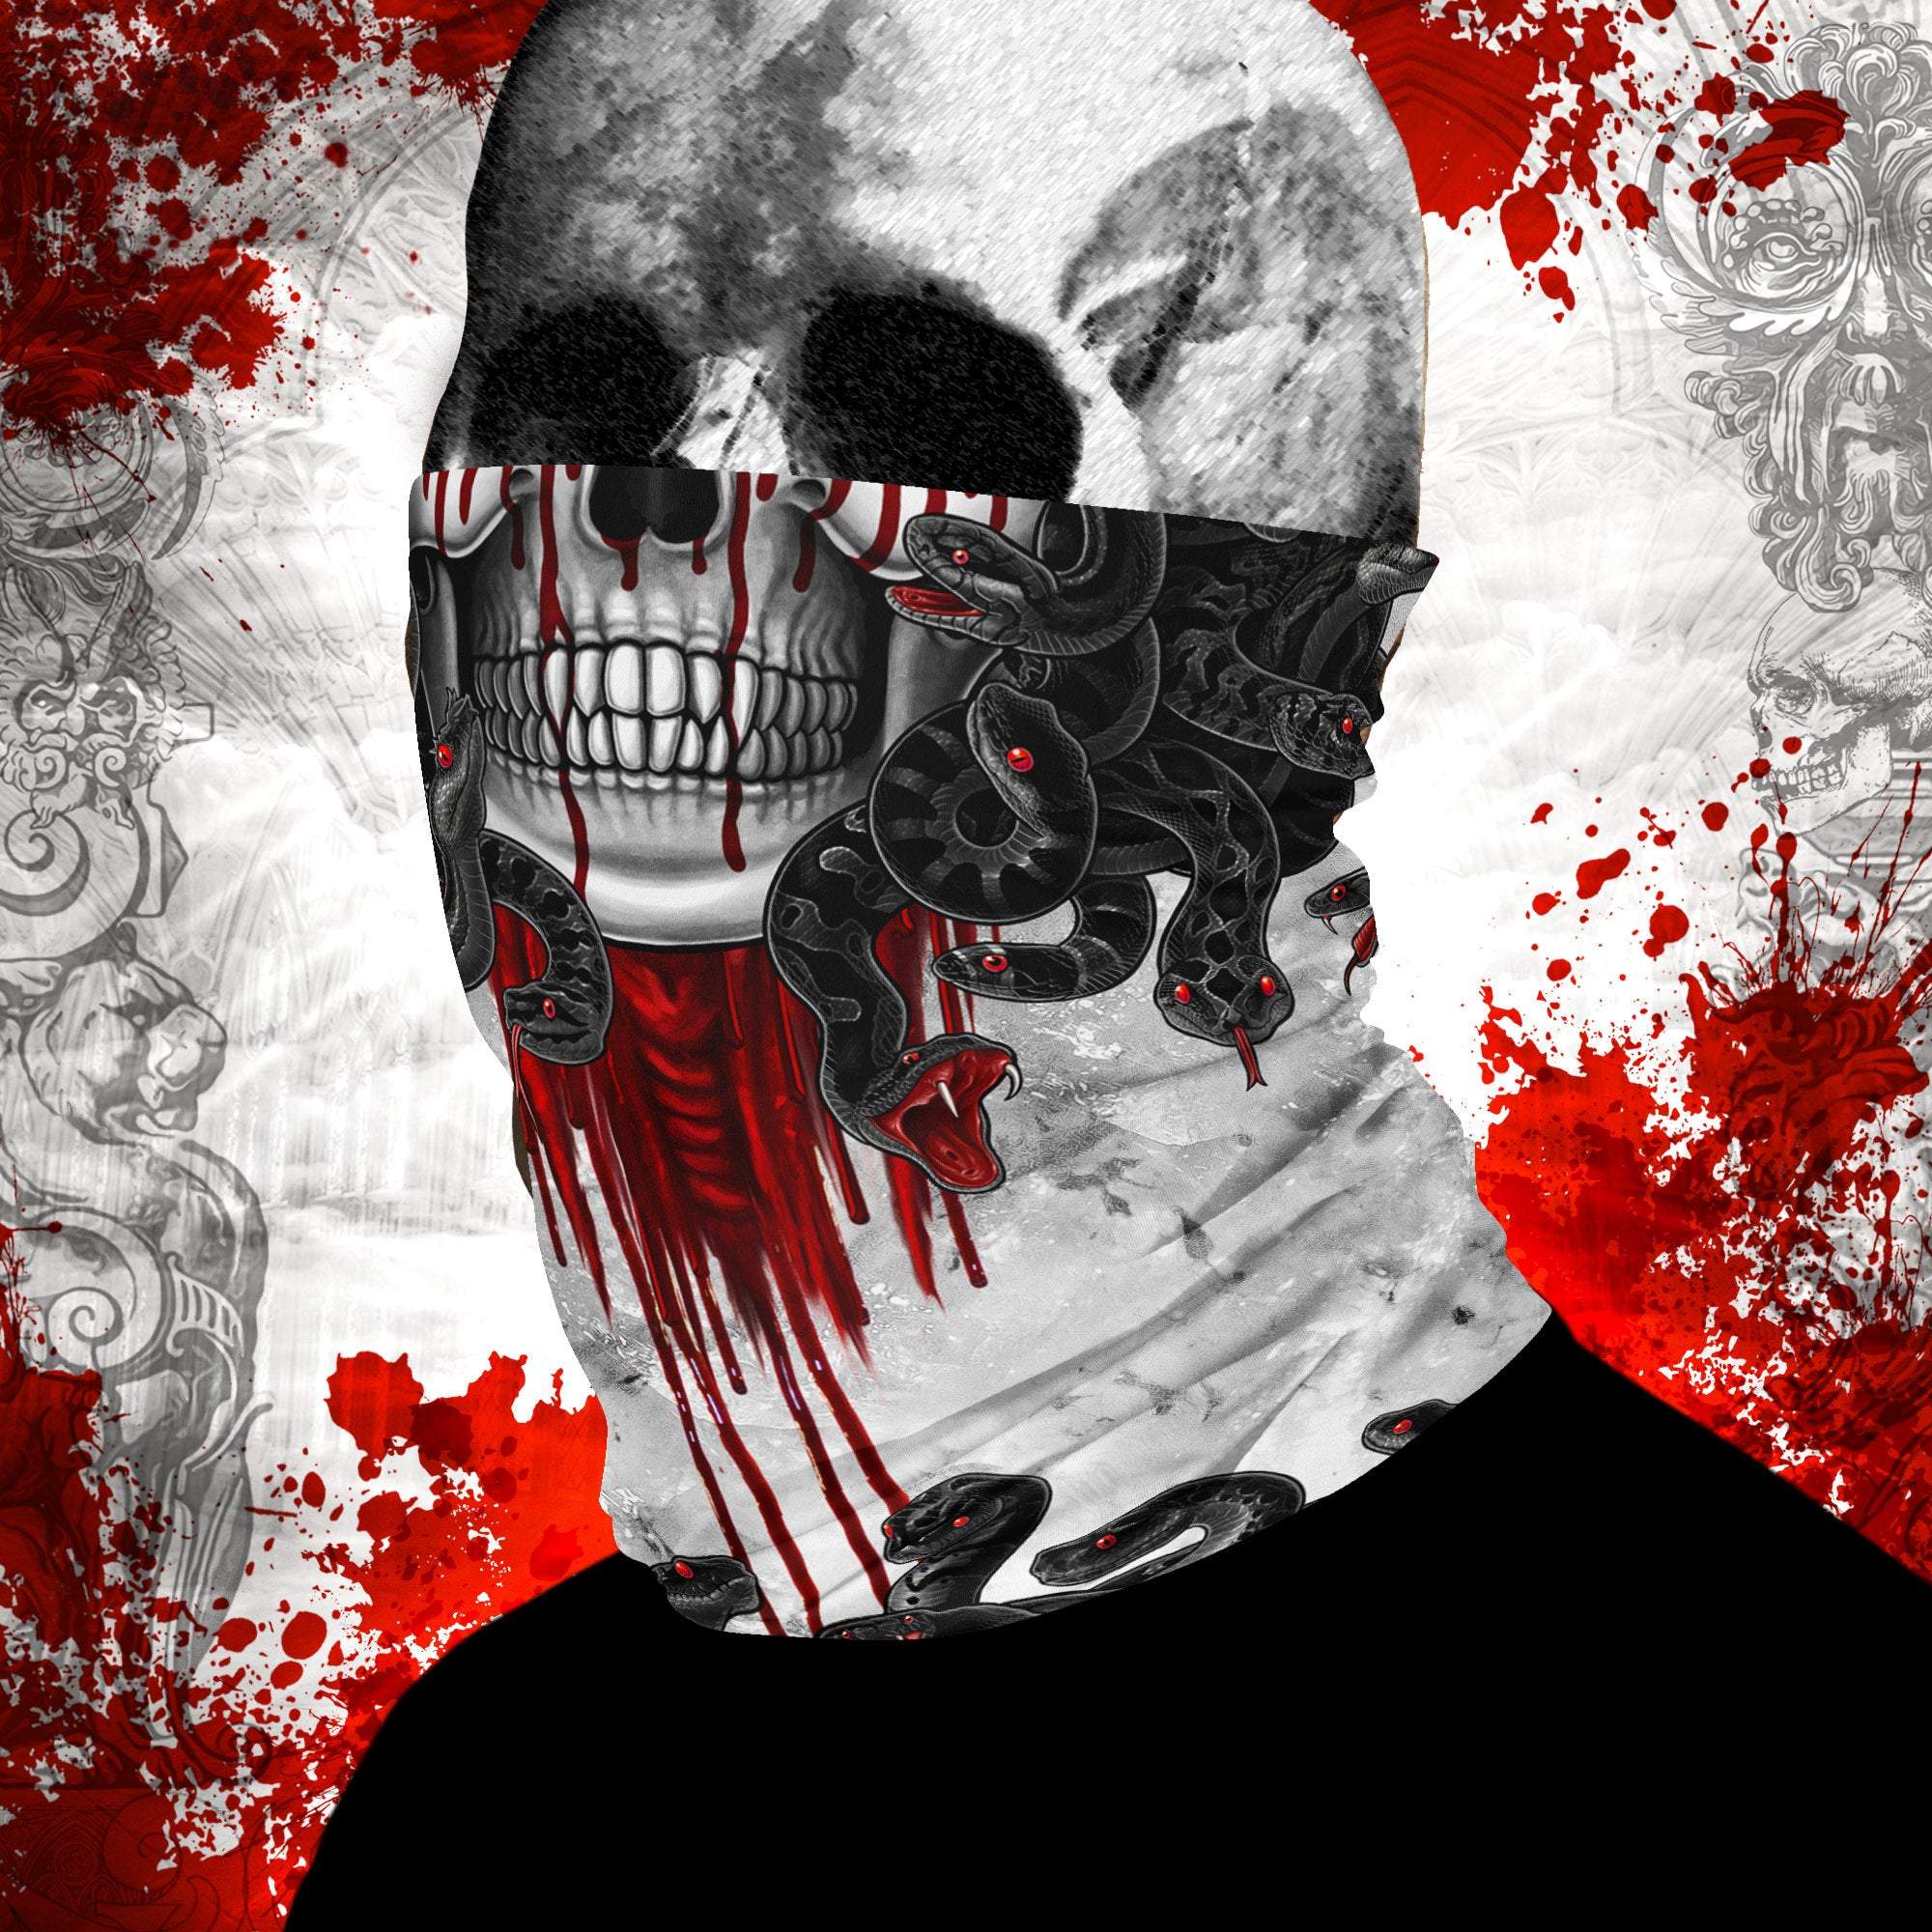 Medusa Neck Gaiter, Face Mask, Head Covering, Snakes Headband, White Goth, Skull Art - Black, 2 Face Options - Abysm Internal